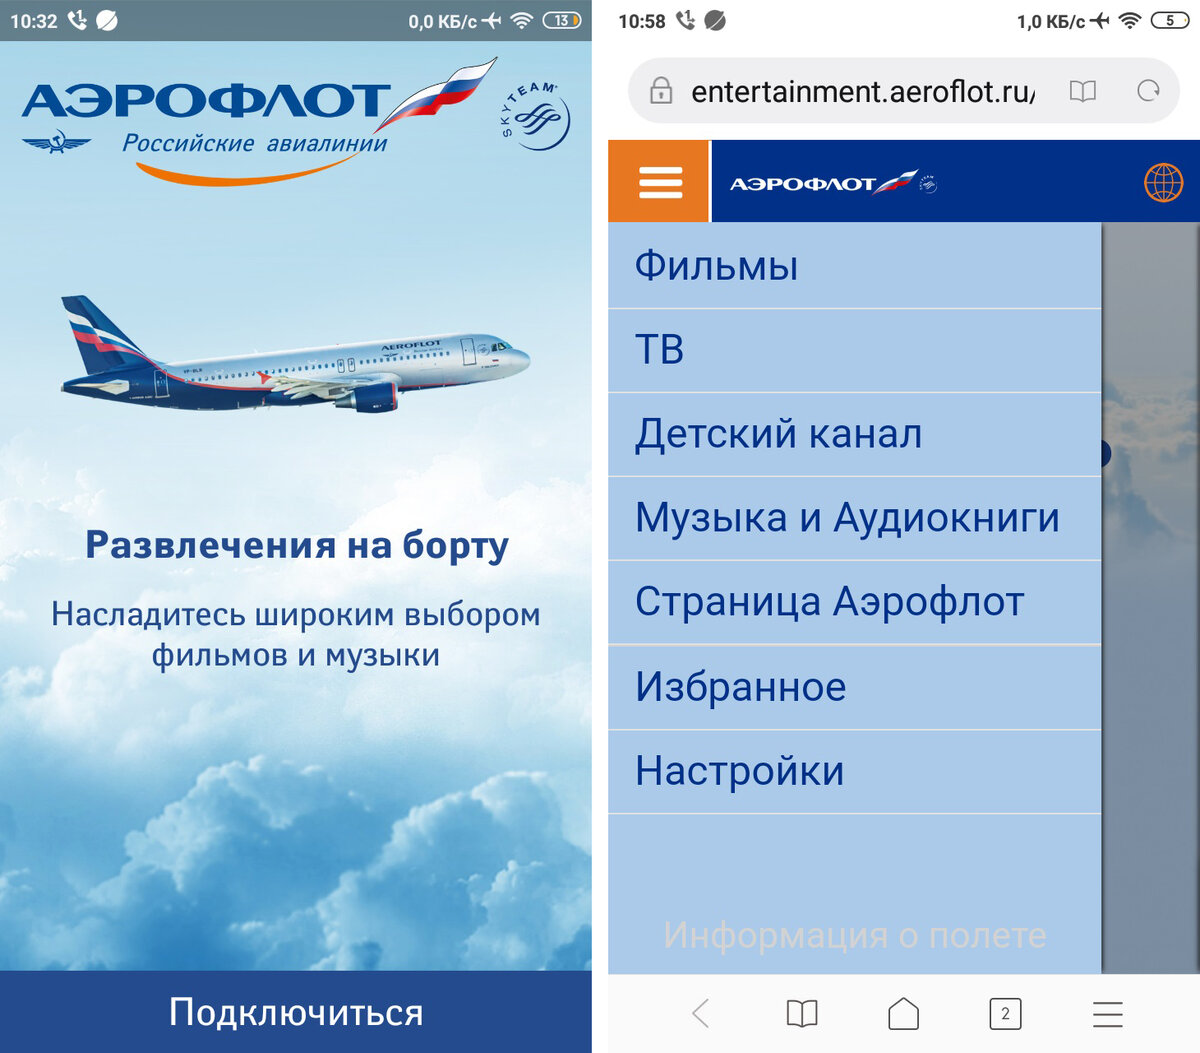 Aeroflot app. Самолет Аэрофлот. Система развлечений на борту Аэрофлота. Аэрофлот развлечения на борту. Самолёты компании Аэрофлот.